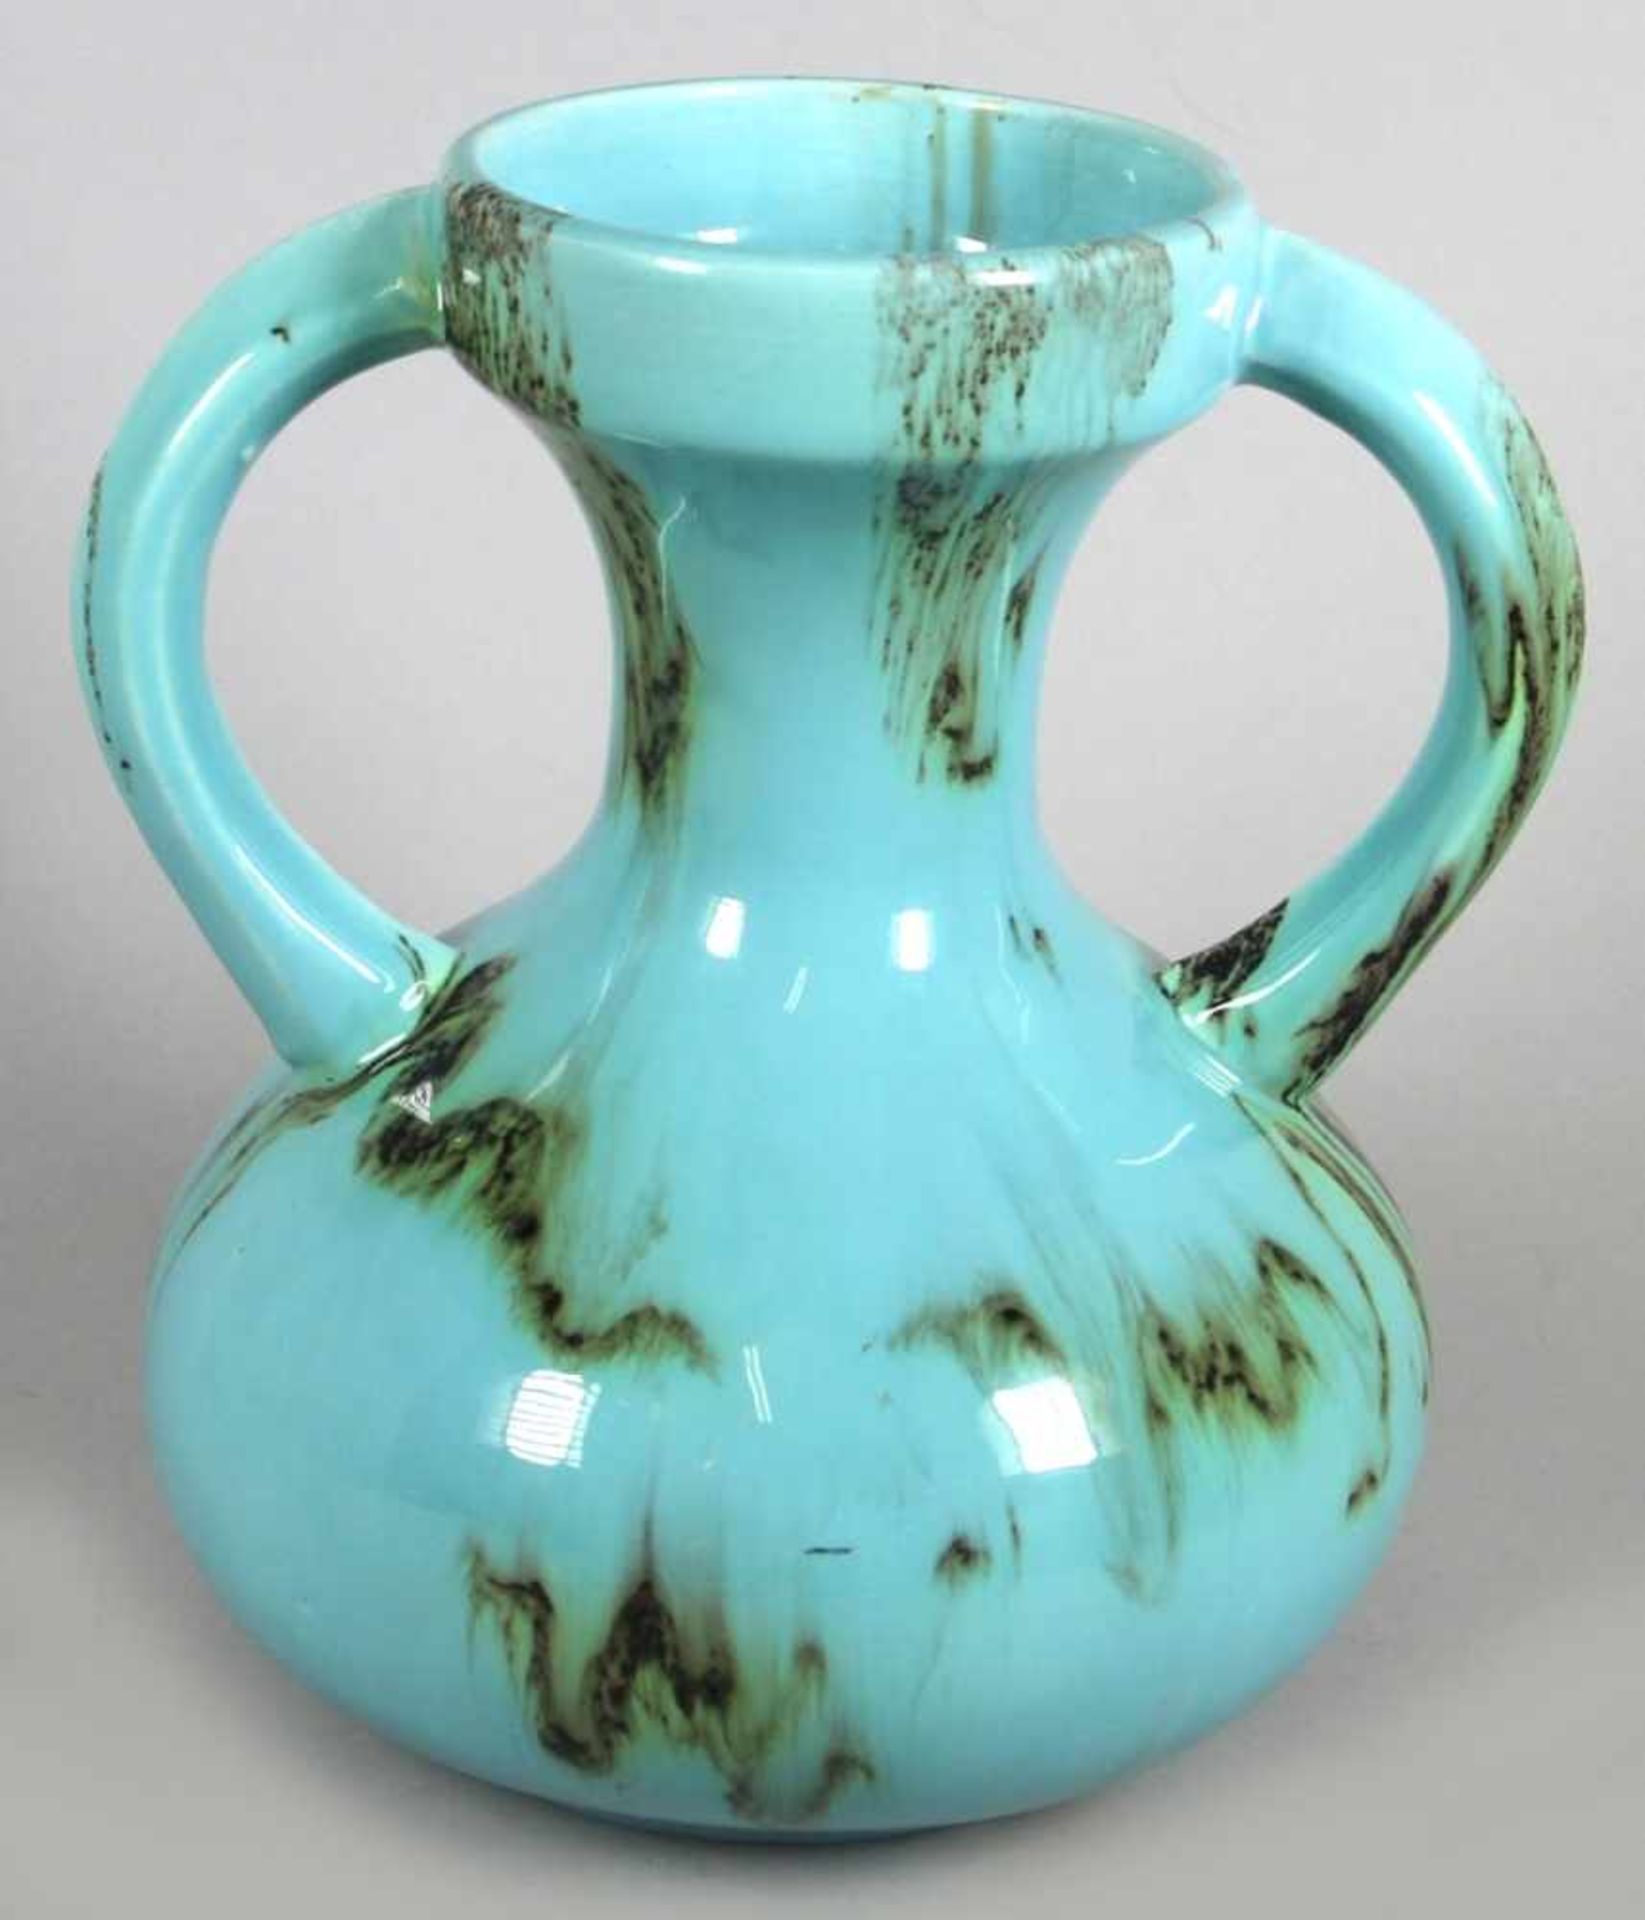 Keramik-Doppelhenkelziervase, um 1920, sandfarbener Scherben, türkisfarben lasiert inbraun- - Bild 2 aus 3